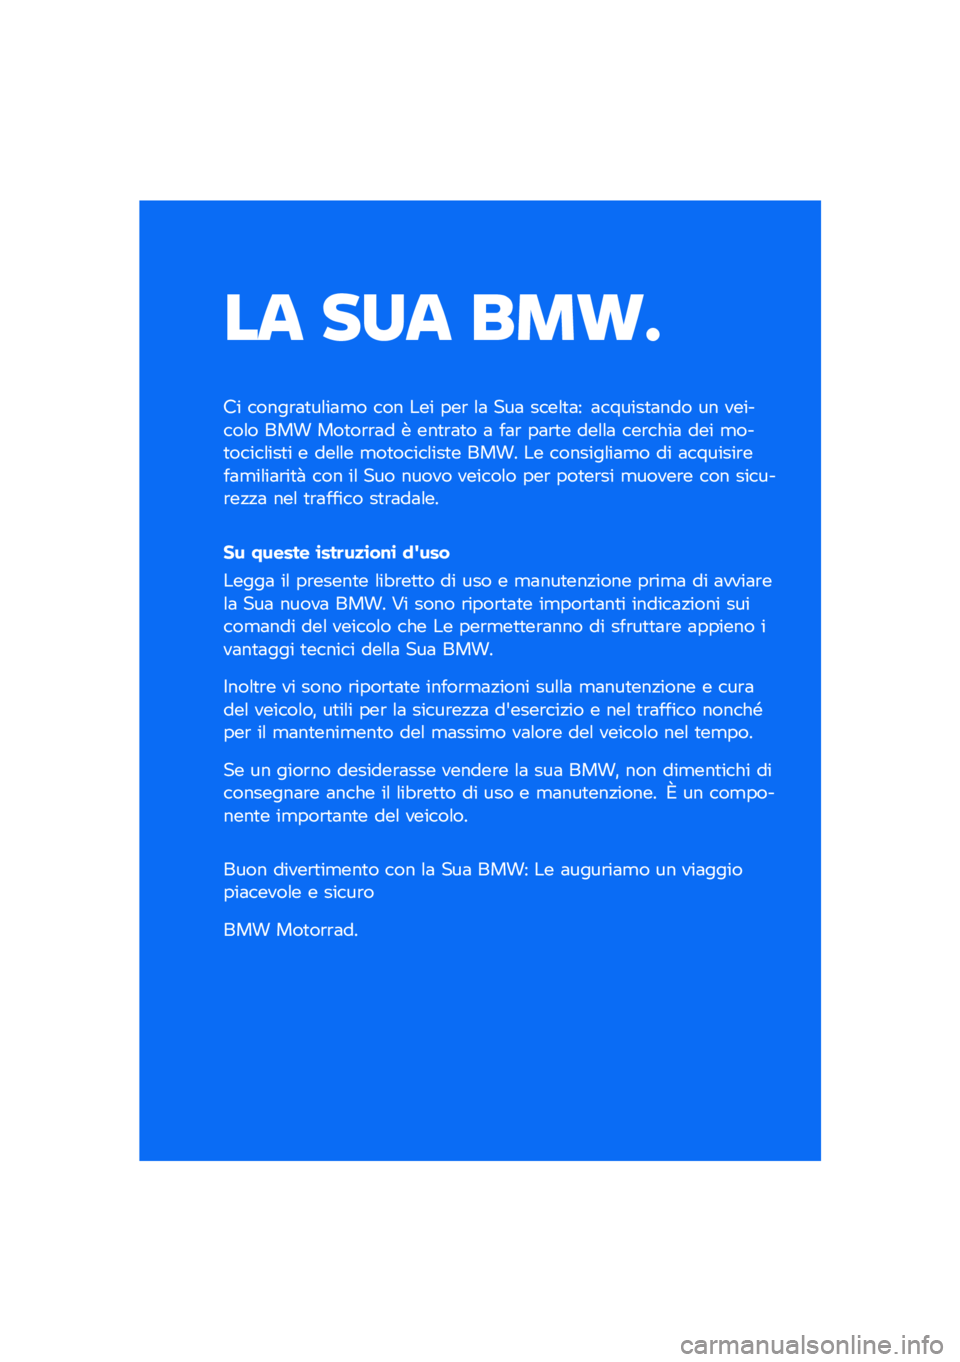 BMW MOTORRAD F 850 GS 2021  Libretto di uso e manutenzione (in Italian) �� ��� ���\b�	
�� �����\b�	�
��\f��	�
� ��� ��� ���\b �\f�	 ���	 ����\f�
�	� �	������
�	��� �� �������\f� ��� ���
��\b�\b�	� � ���
�\b�	�
� �	